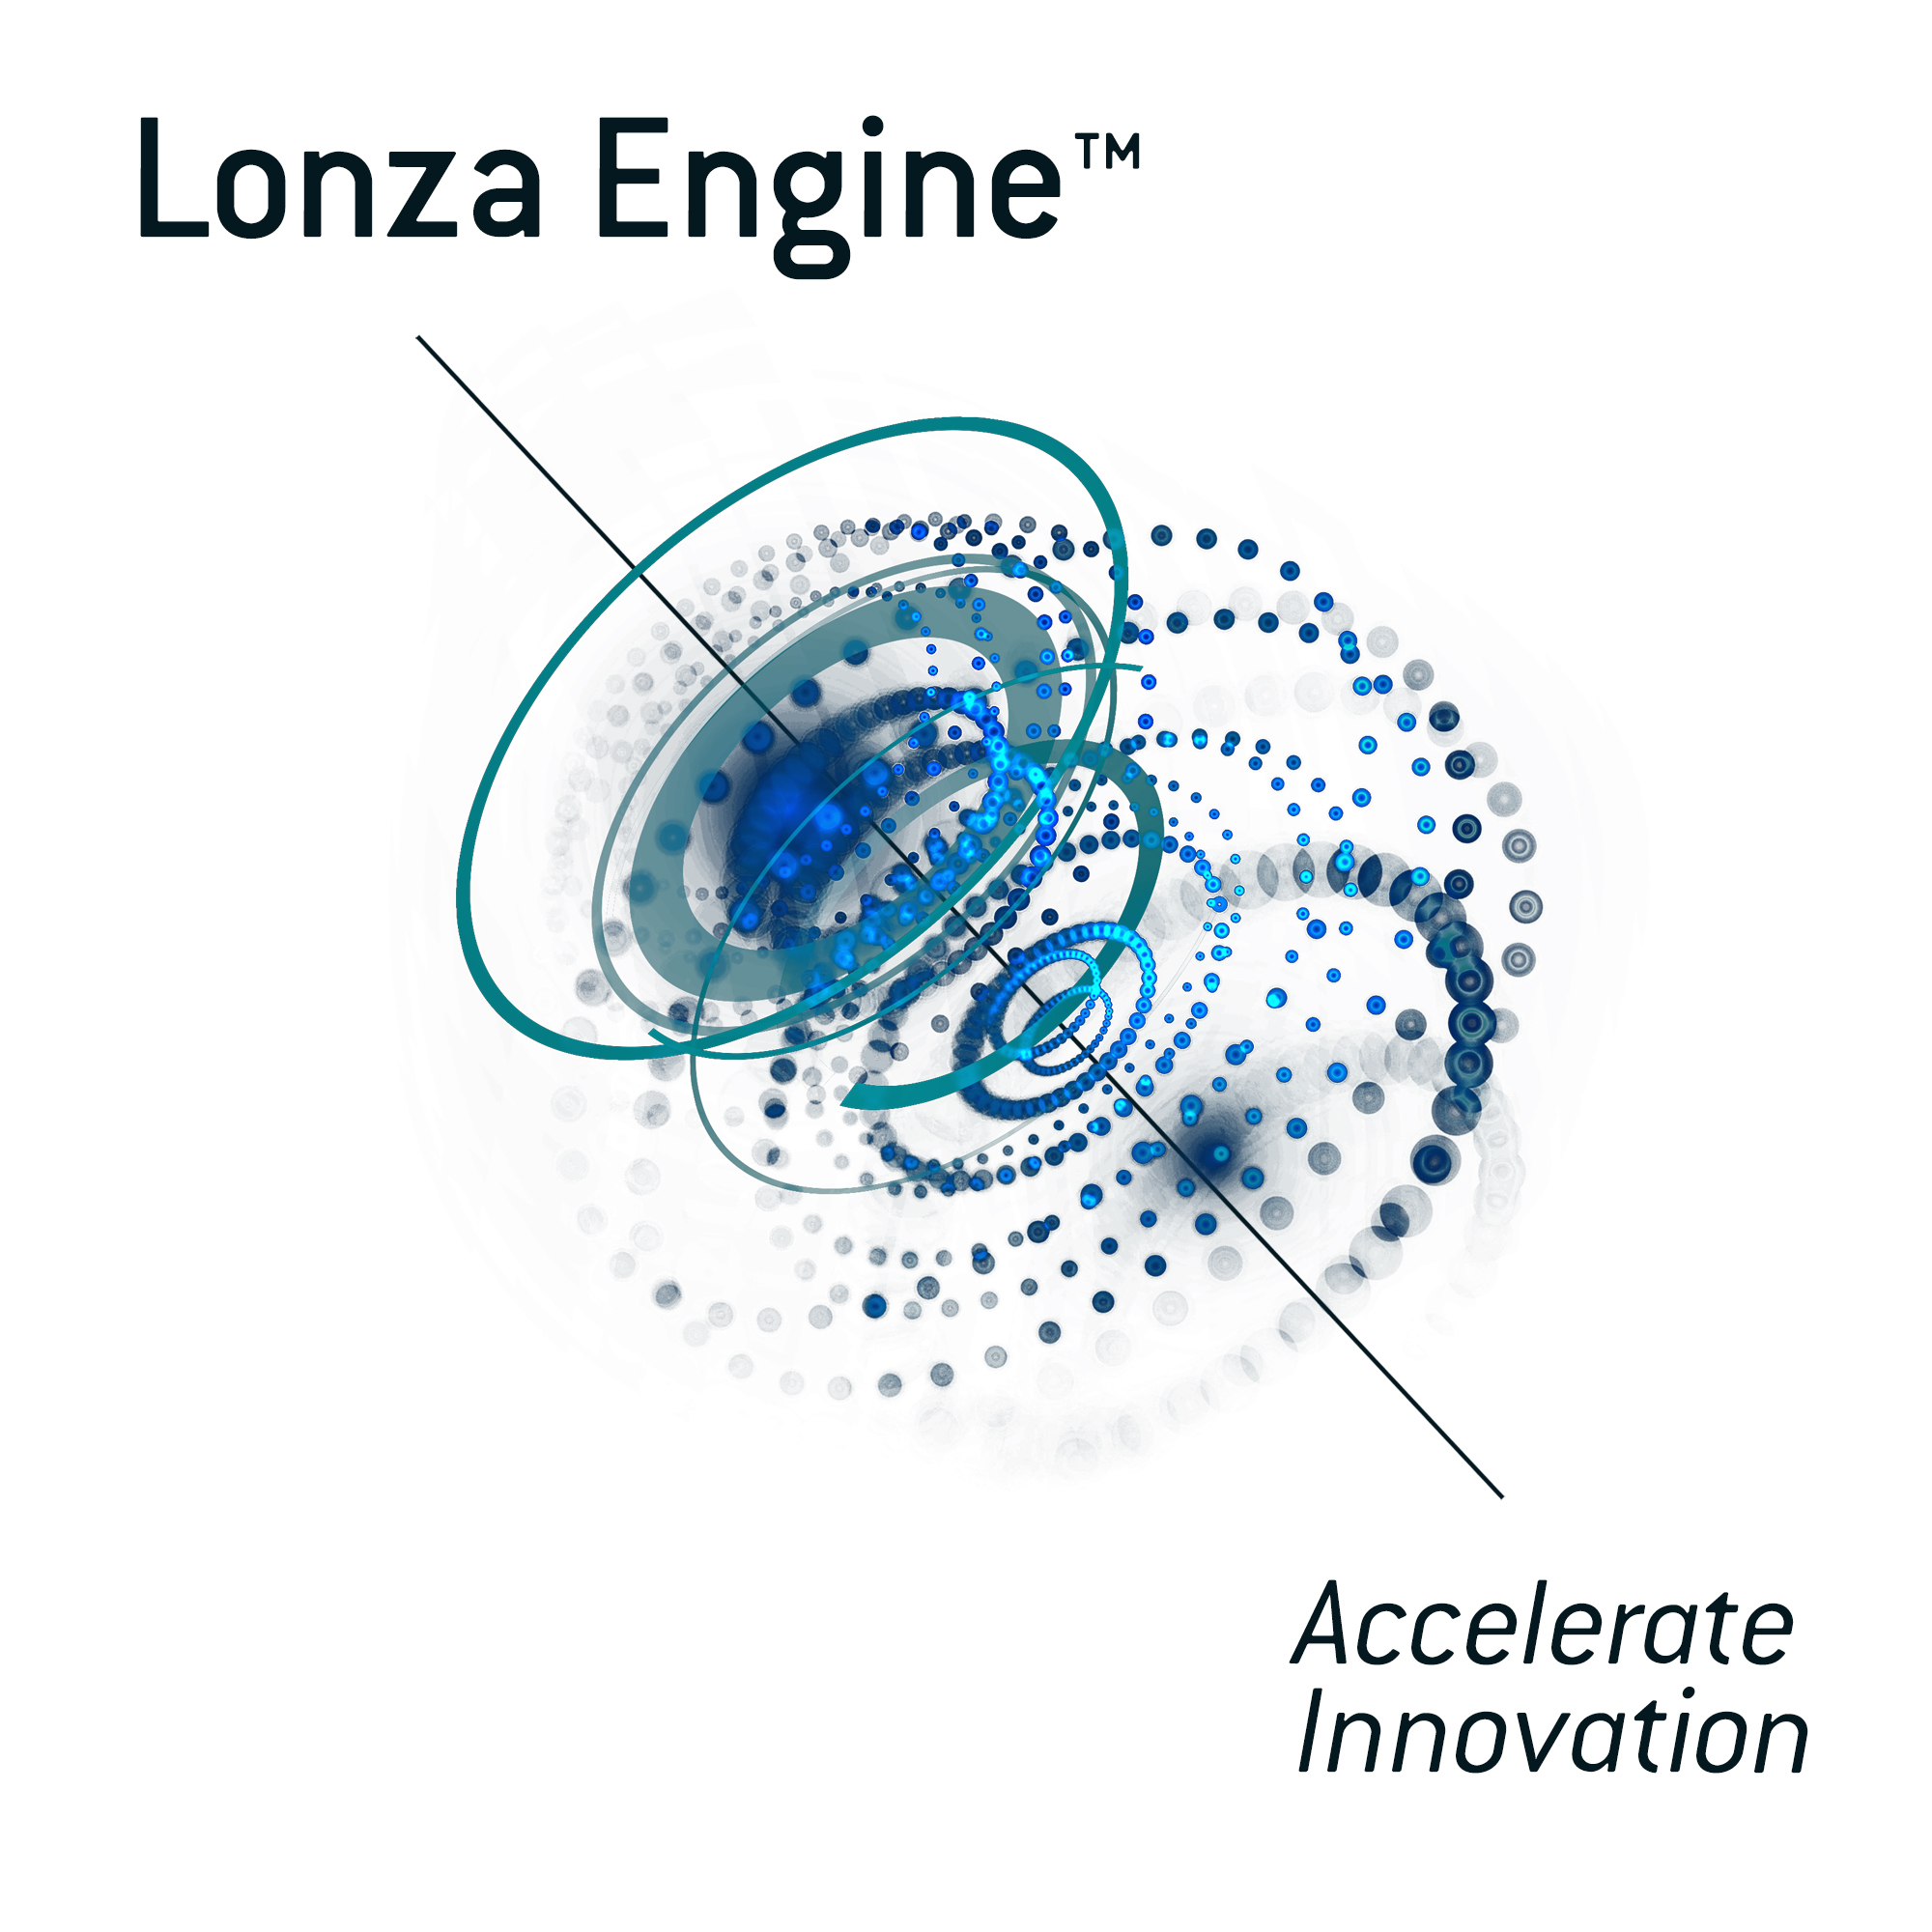 Lonza Engine(TM) Equipment portfolio